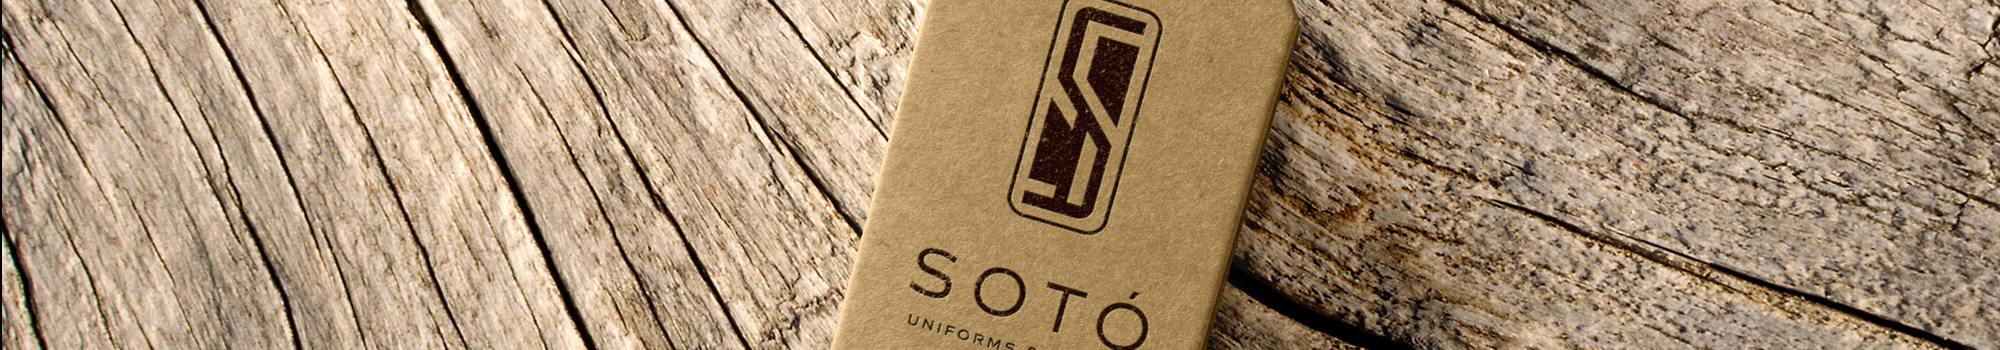 Soto Uniforms Design's profile banner